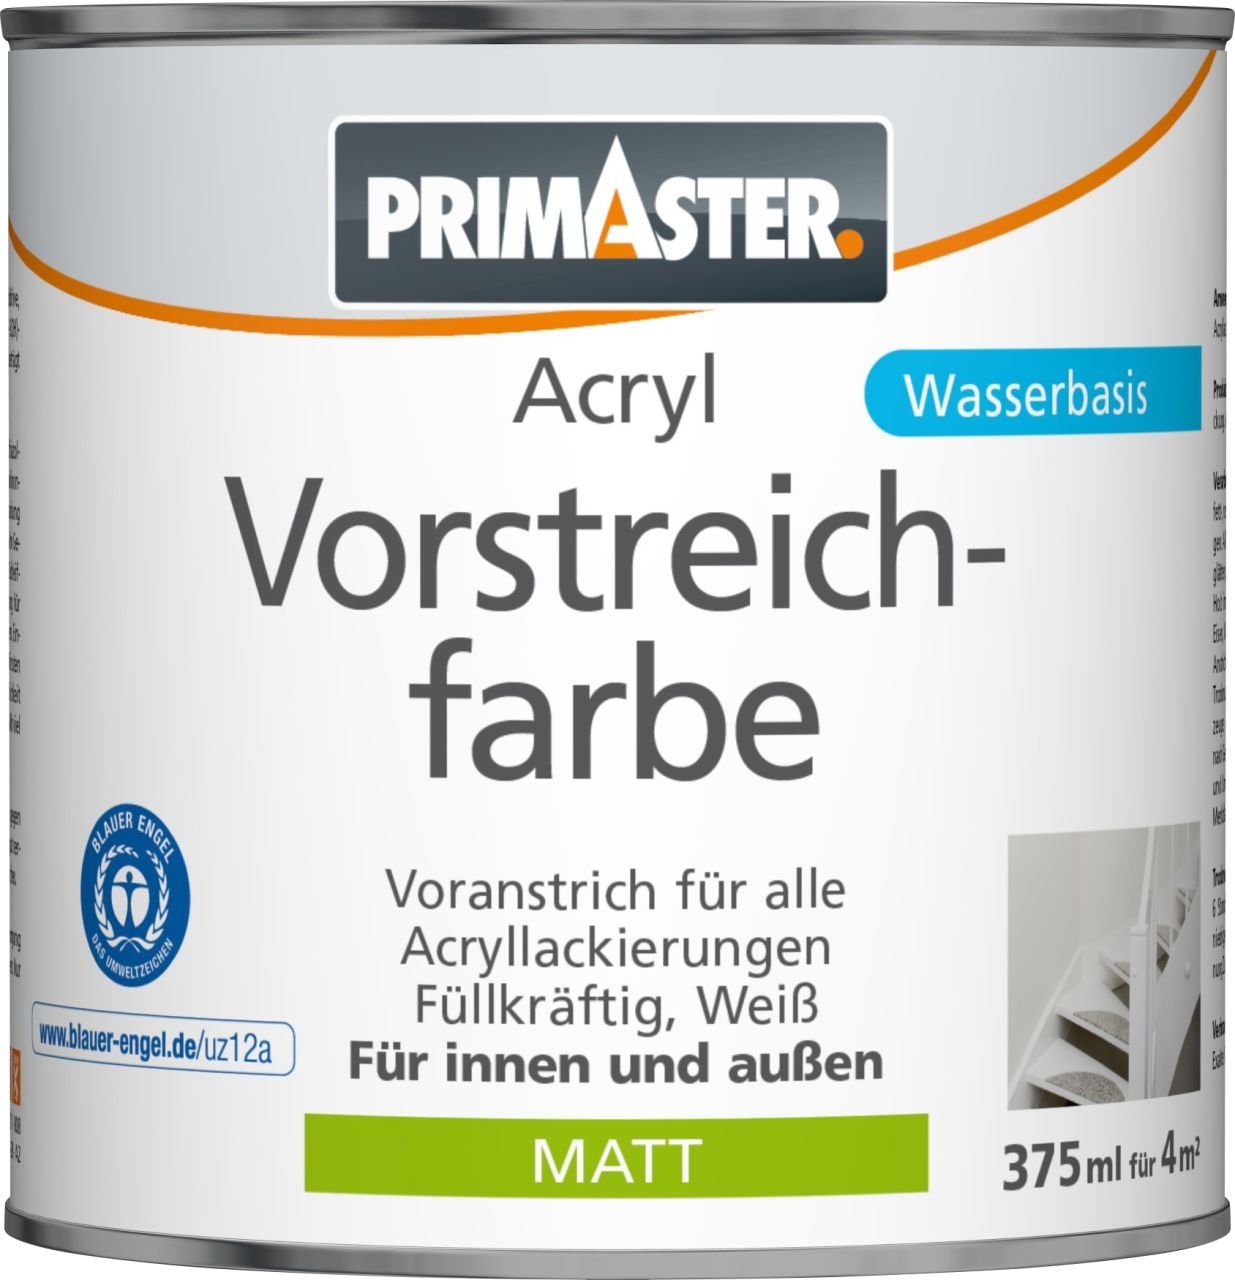 weiß Acryl Primaster ml Vorstreichfarbe Primaster matt Grundierfarbe 375